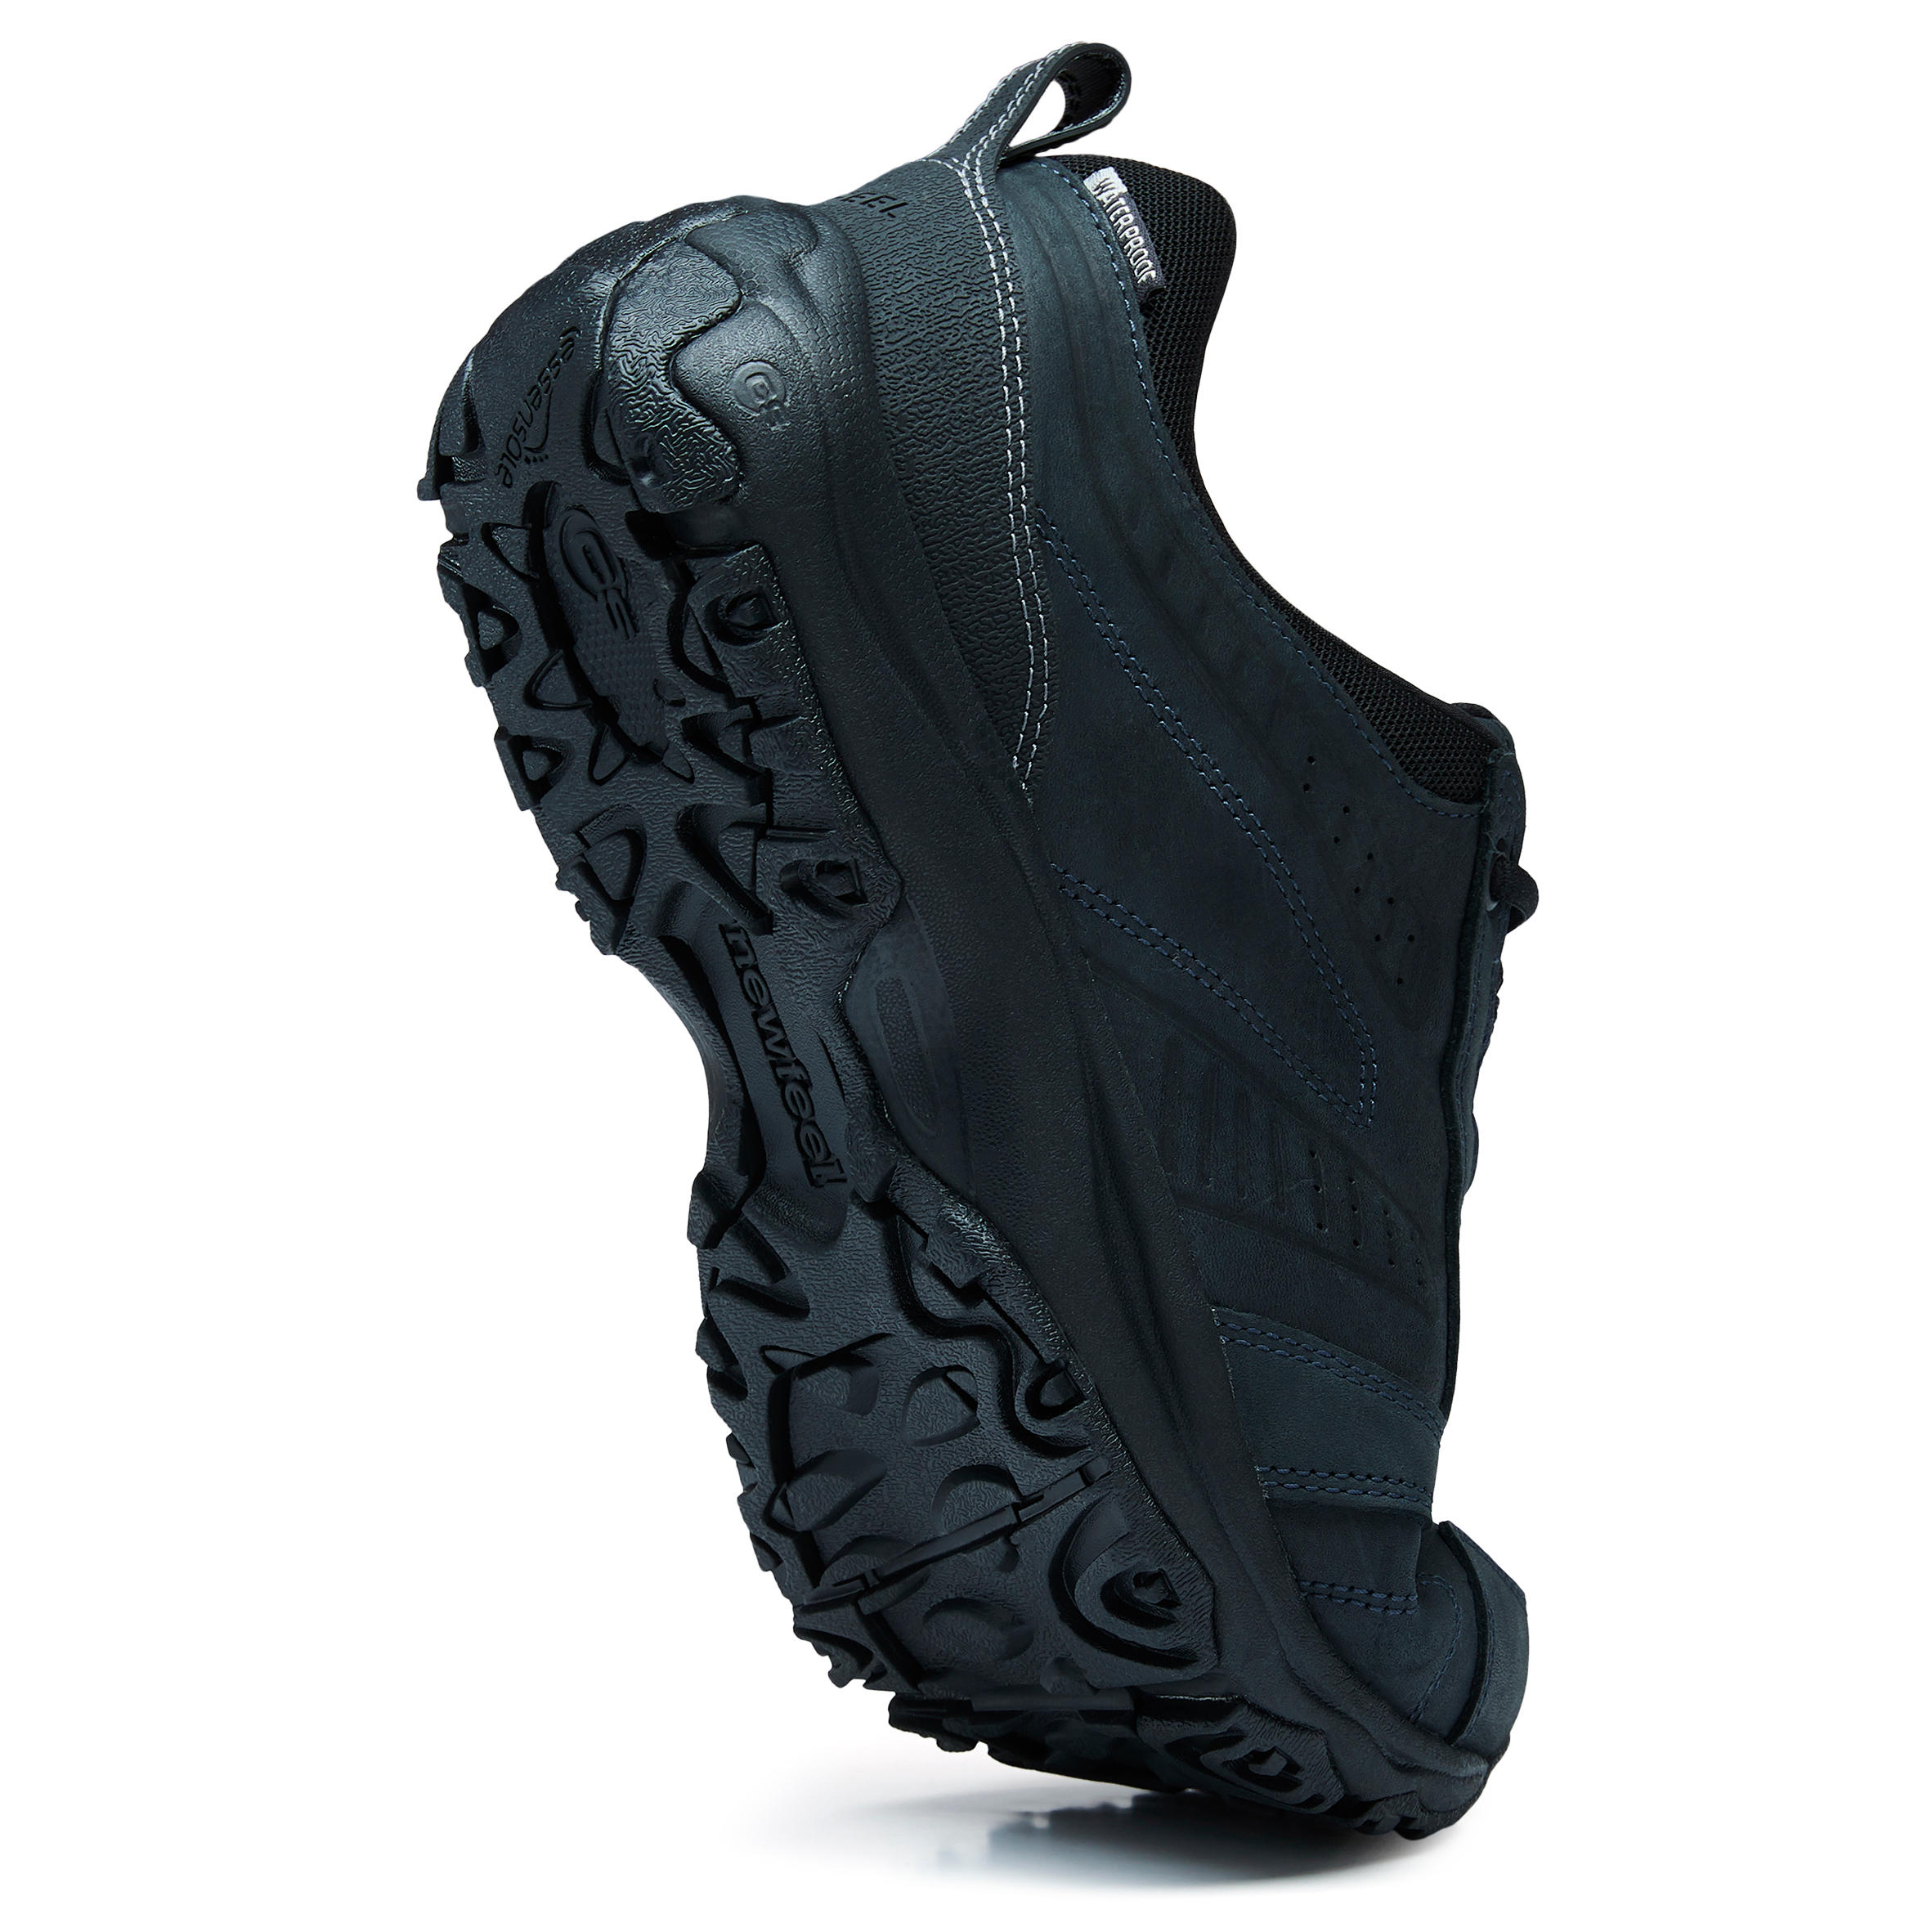 Nakuru Waterproof Men's Urban Waterproof Walking Shoes - Black Leather 22/25